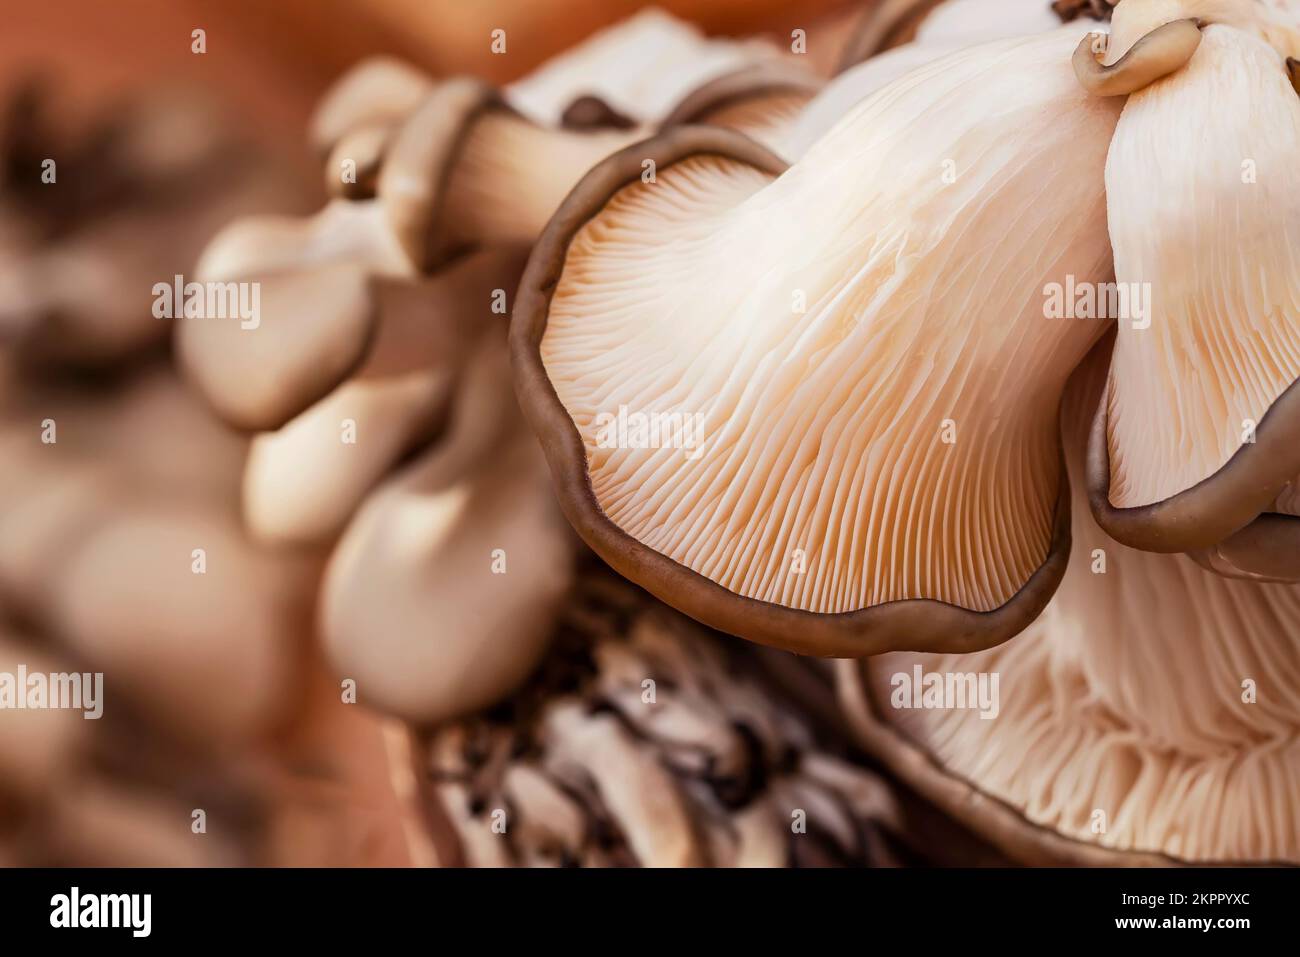 Champignons d'huîtres frais ou hiratake, champignons cultivés. Concept de saine alimentation, de diète, de fond alimentaire Banque D'Images